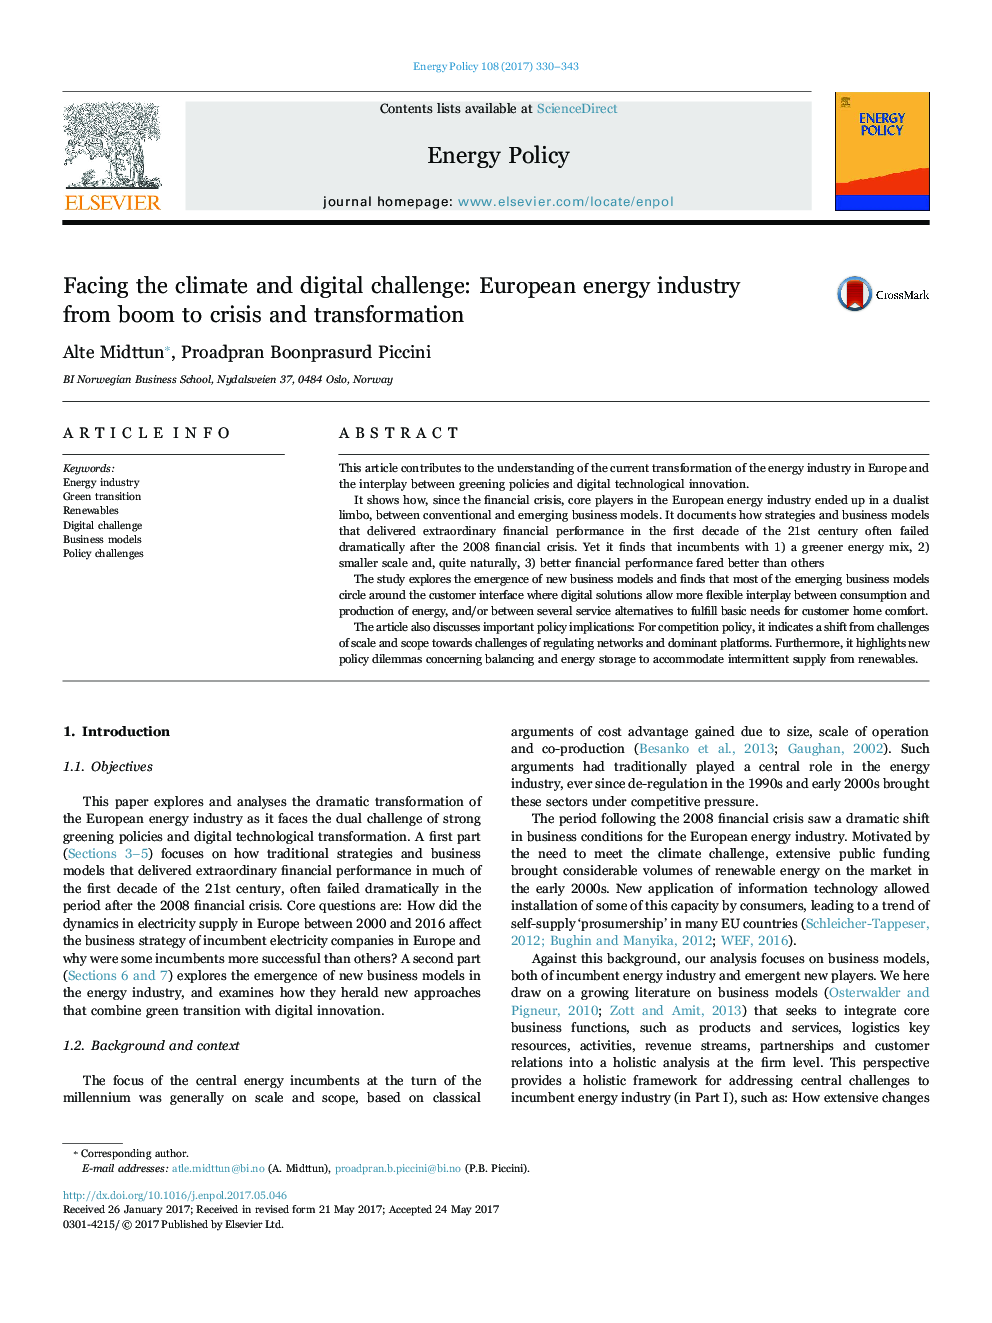 در مواجهه با چالش های آب و هوا و دیجیتال: صنعت انرژی اروپا از رونق به بحران و تحول 